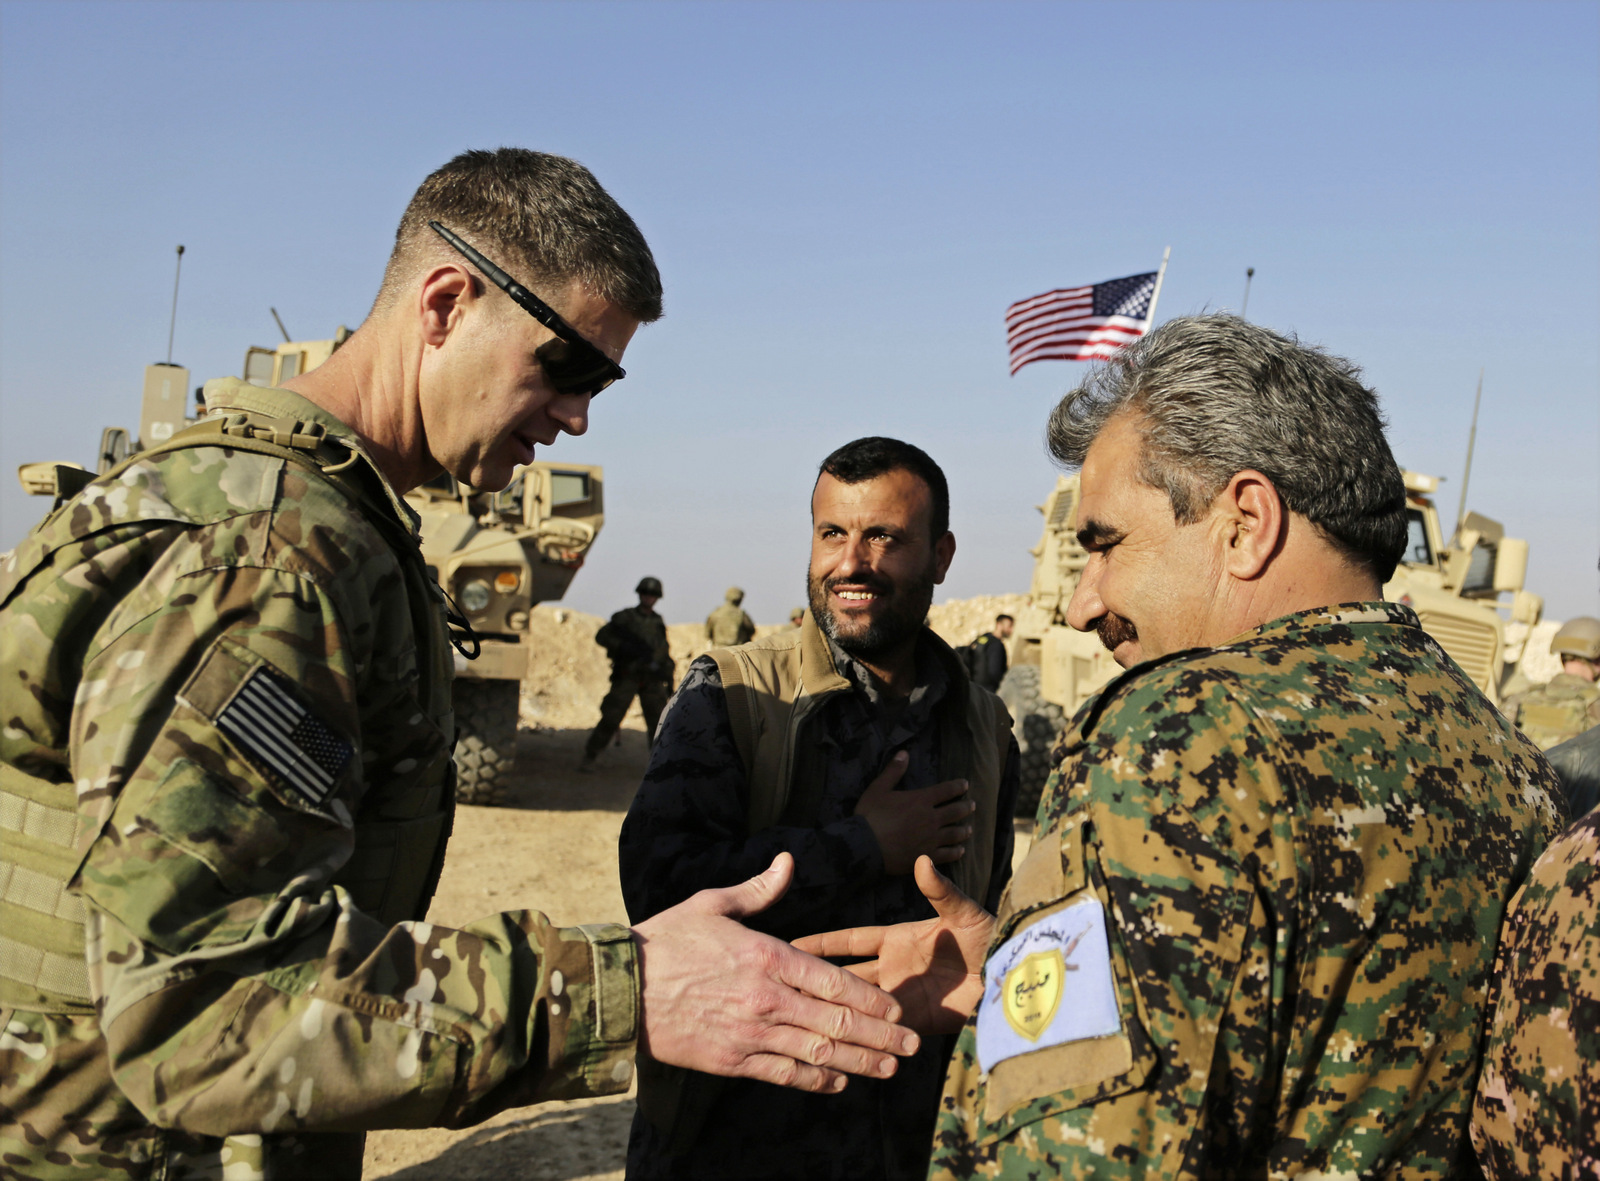 El general de división del ejército estadounidense Jamie Jarrard se fue, gracias al comandante del Consejo Militar de Manbij, Muhammed Abu Adeel, cerca de la ciudad de Manbij, en el norte de Siria, el 7 de febrero de 2018 (AP / Susannah George).